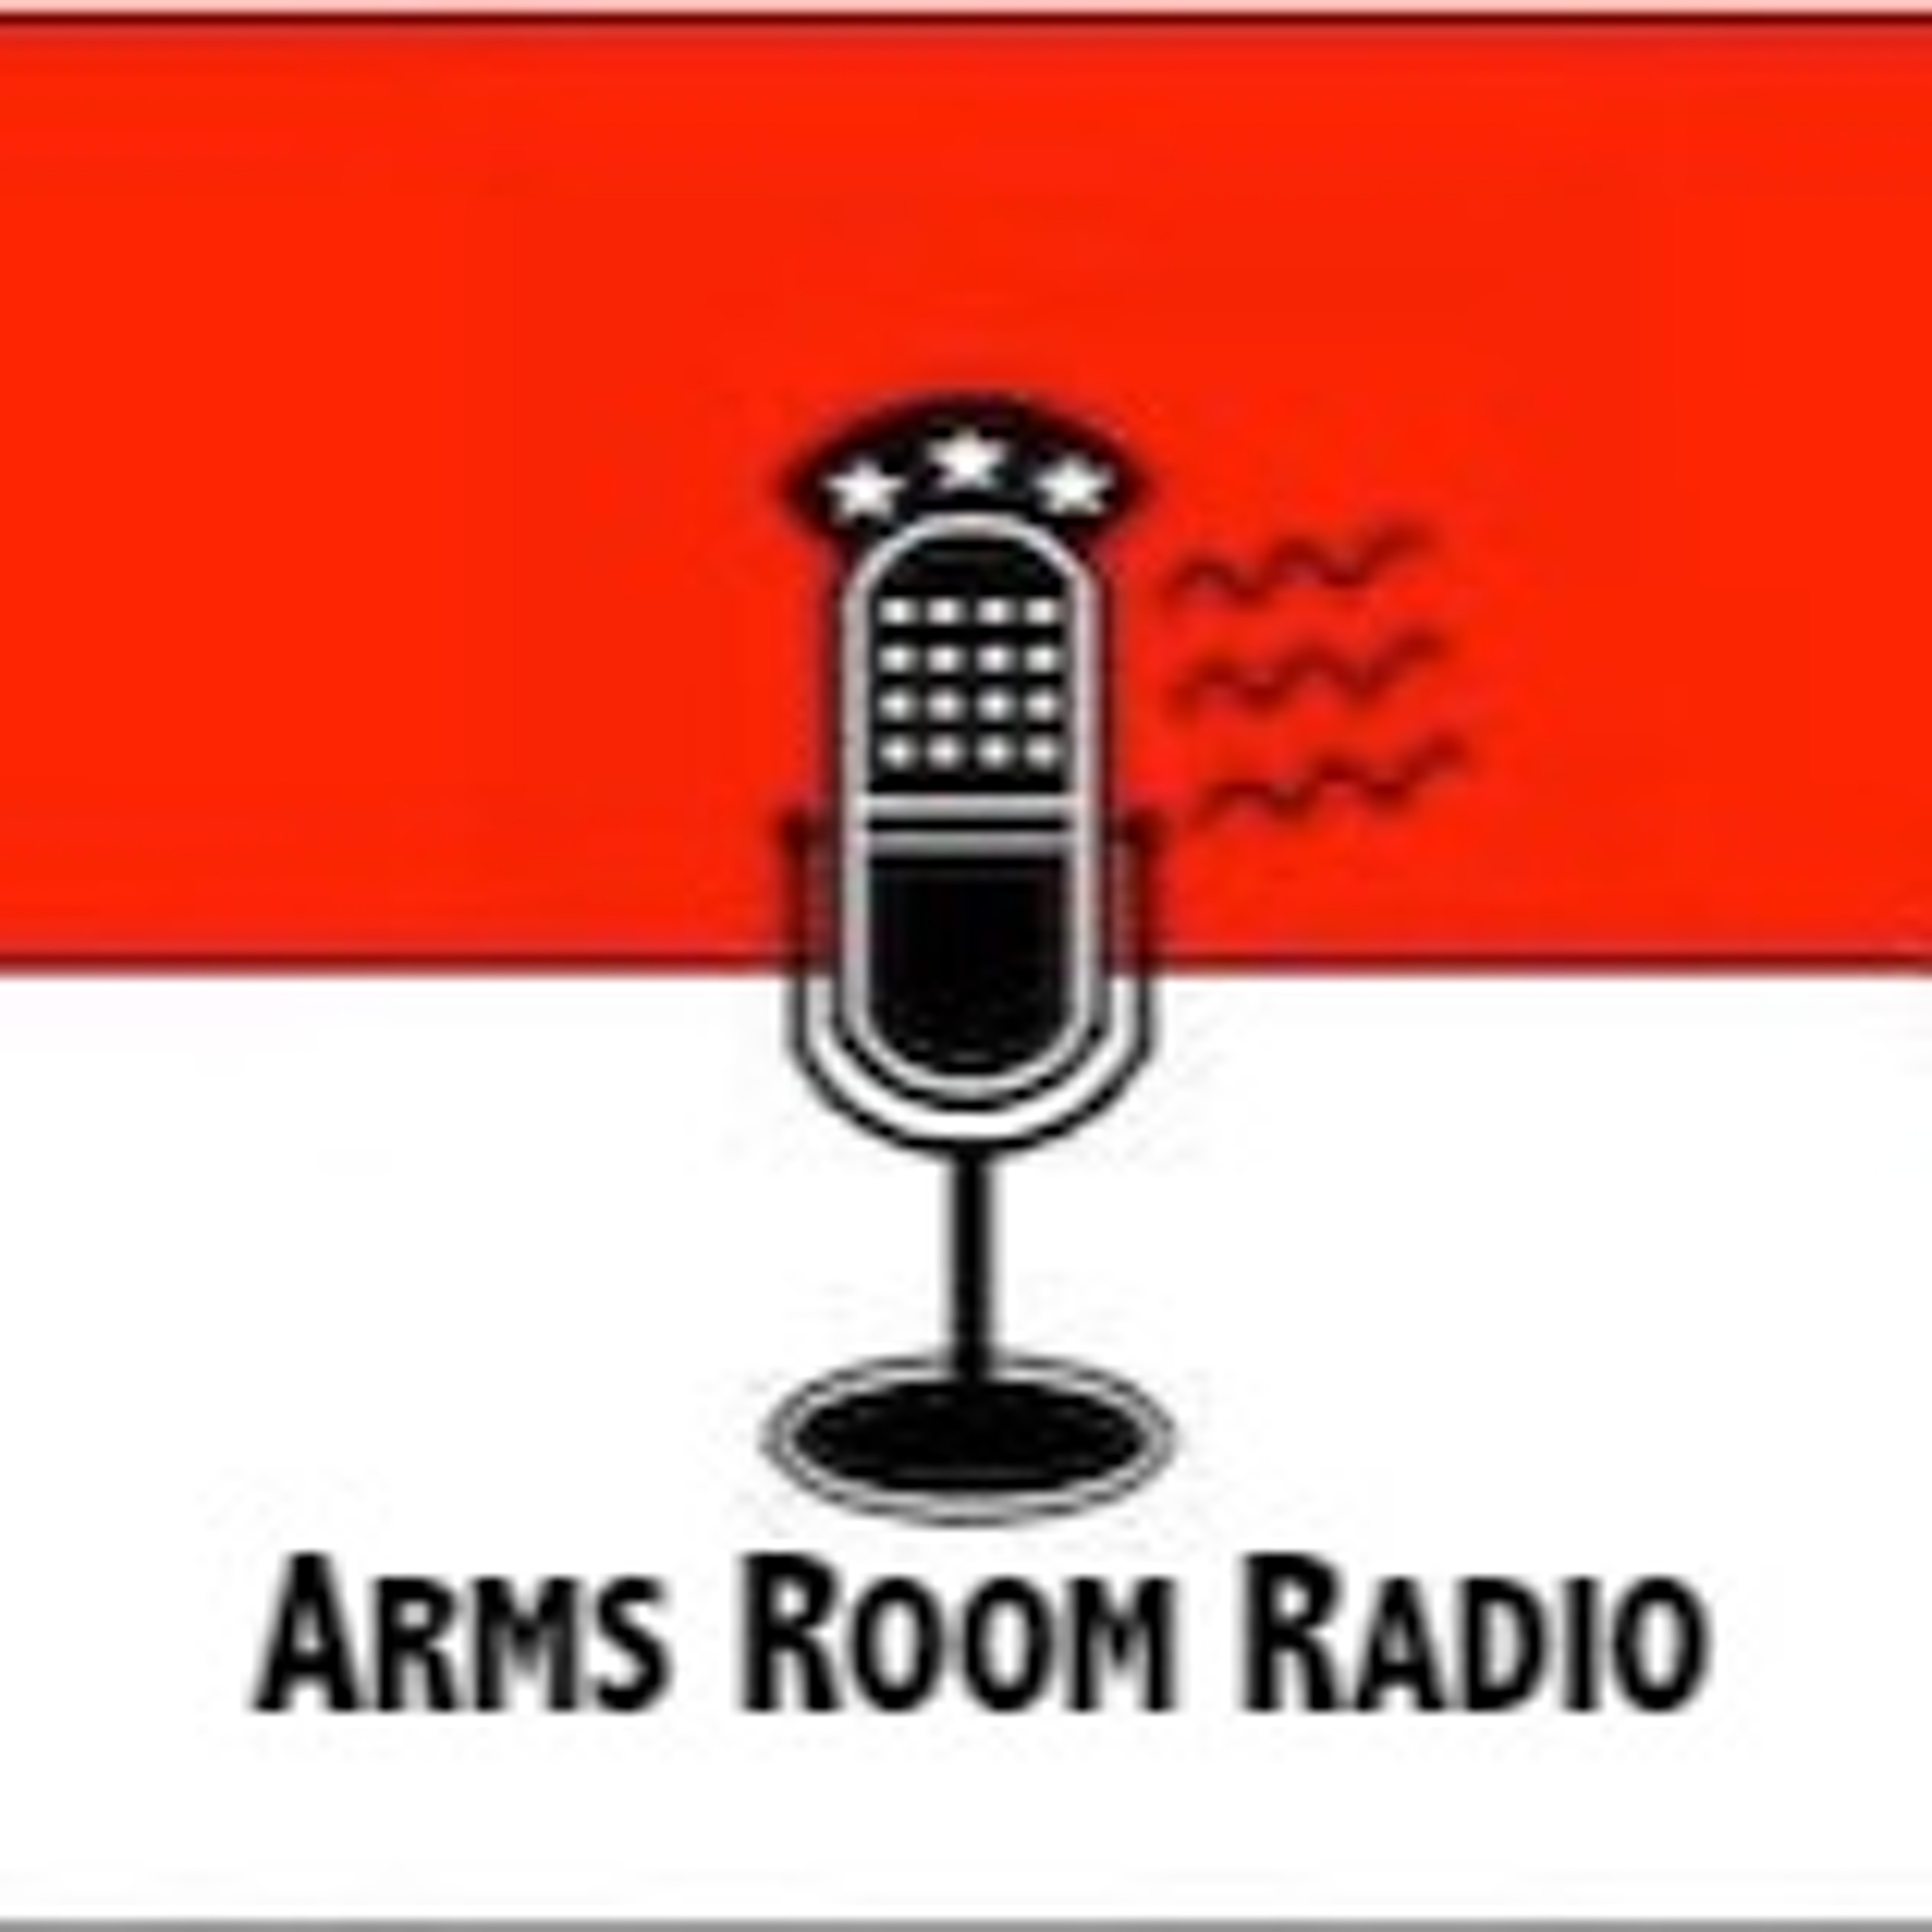 ArmsRoomRadio 03.23.19 Earl is back! Craig DeLuz calls in